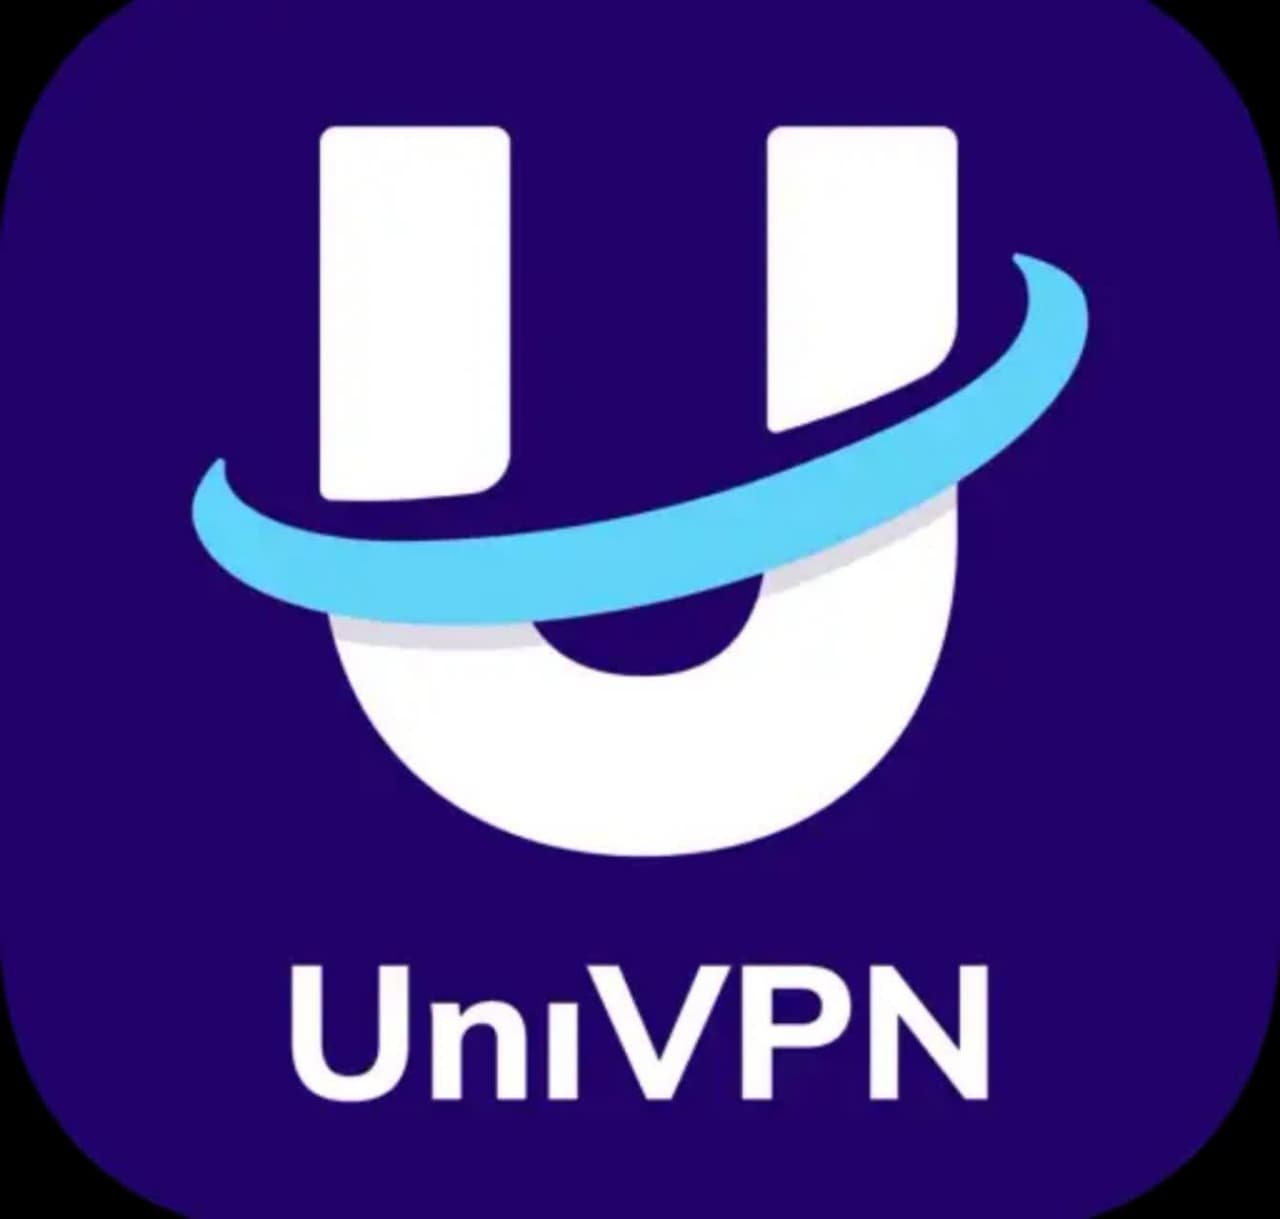 دانلود فیلتر شکن UniVpn نسخه پریمیوم